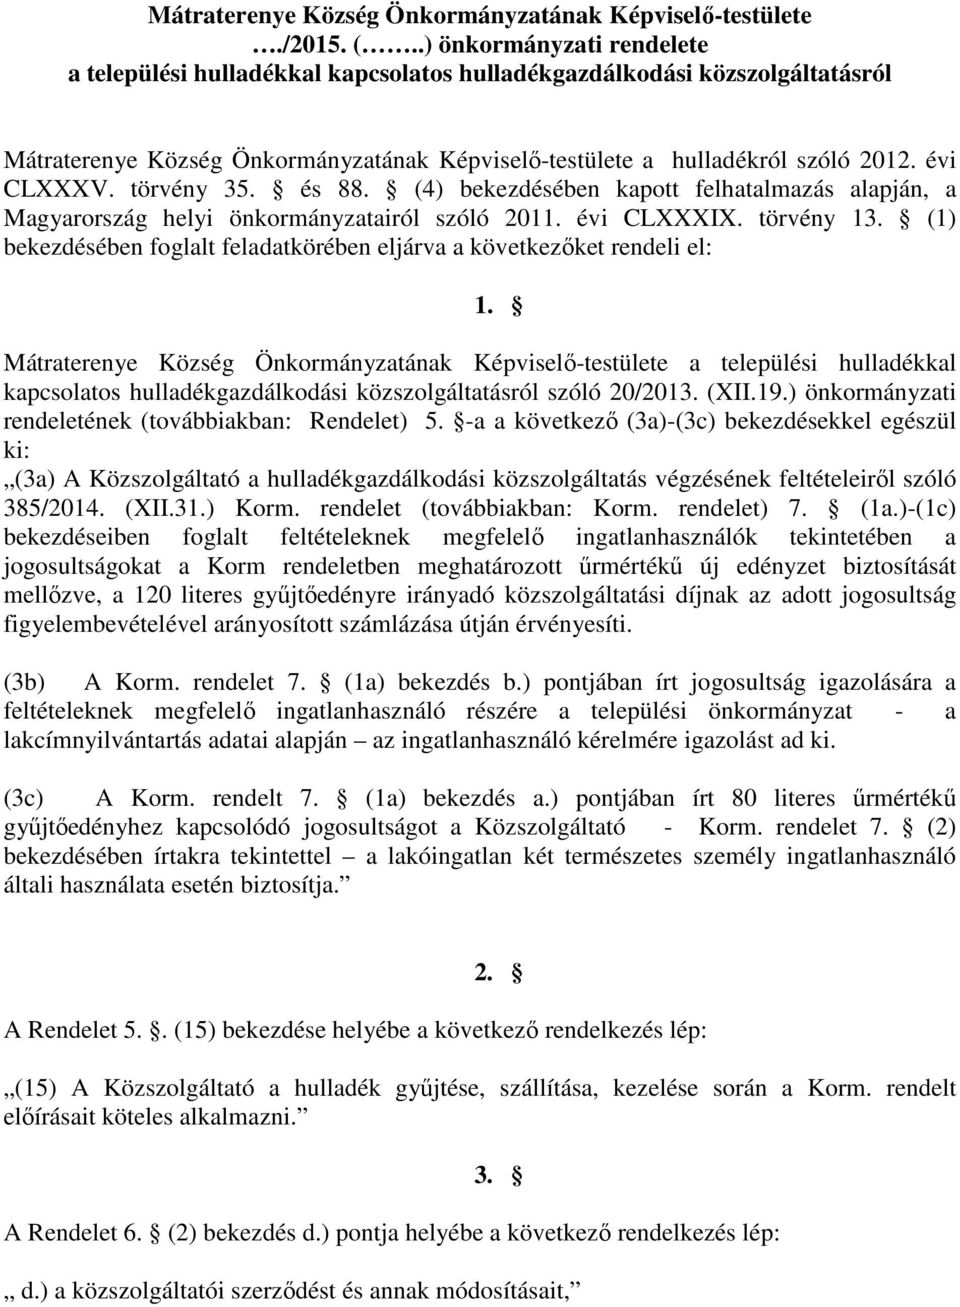 törvény 35. és 88. (4) bekezdésében kapott felhatalmazás alapján, a Magyarország helyi önkormányzatairól szóló 2011. évi CLXXXIX. törvény 13.